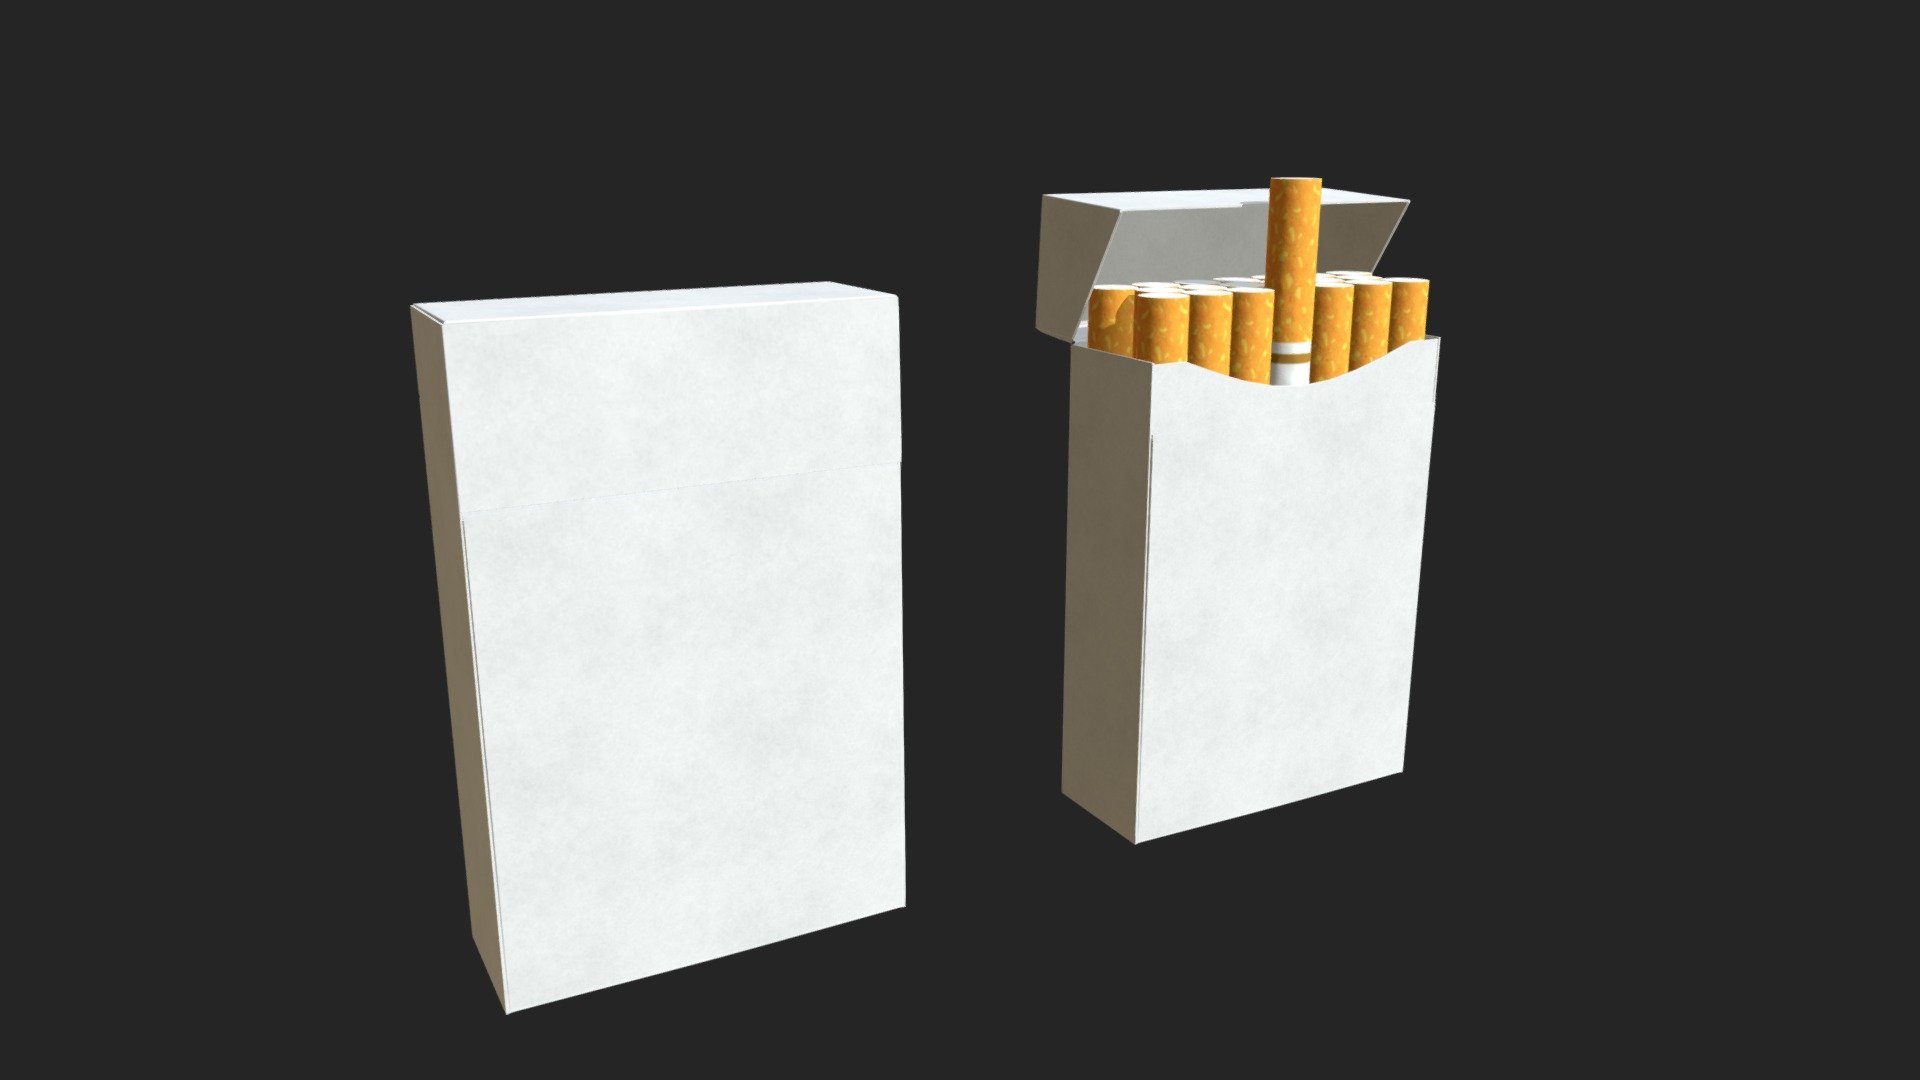 Cigarette packs